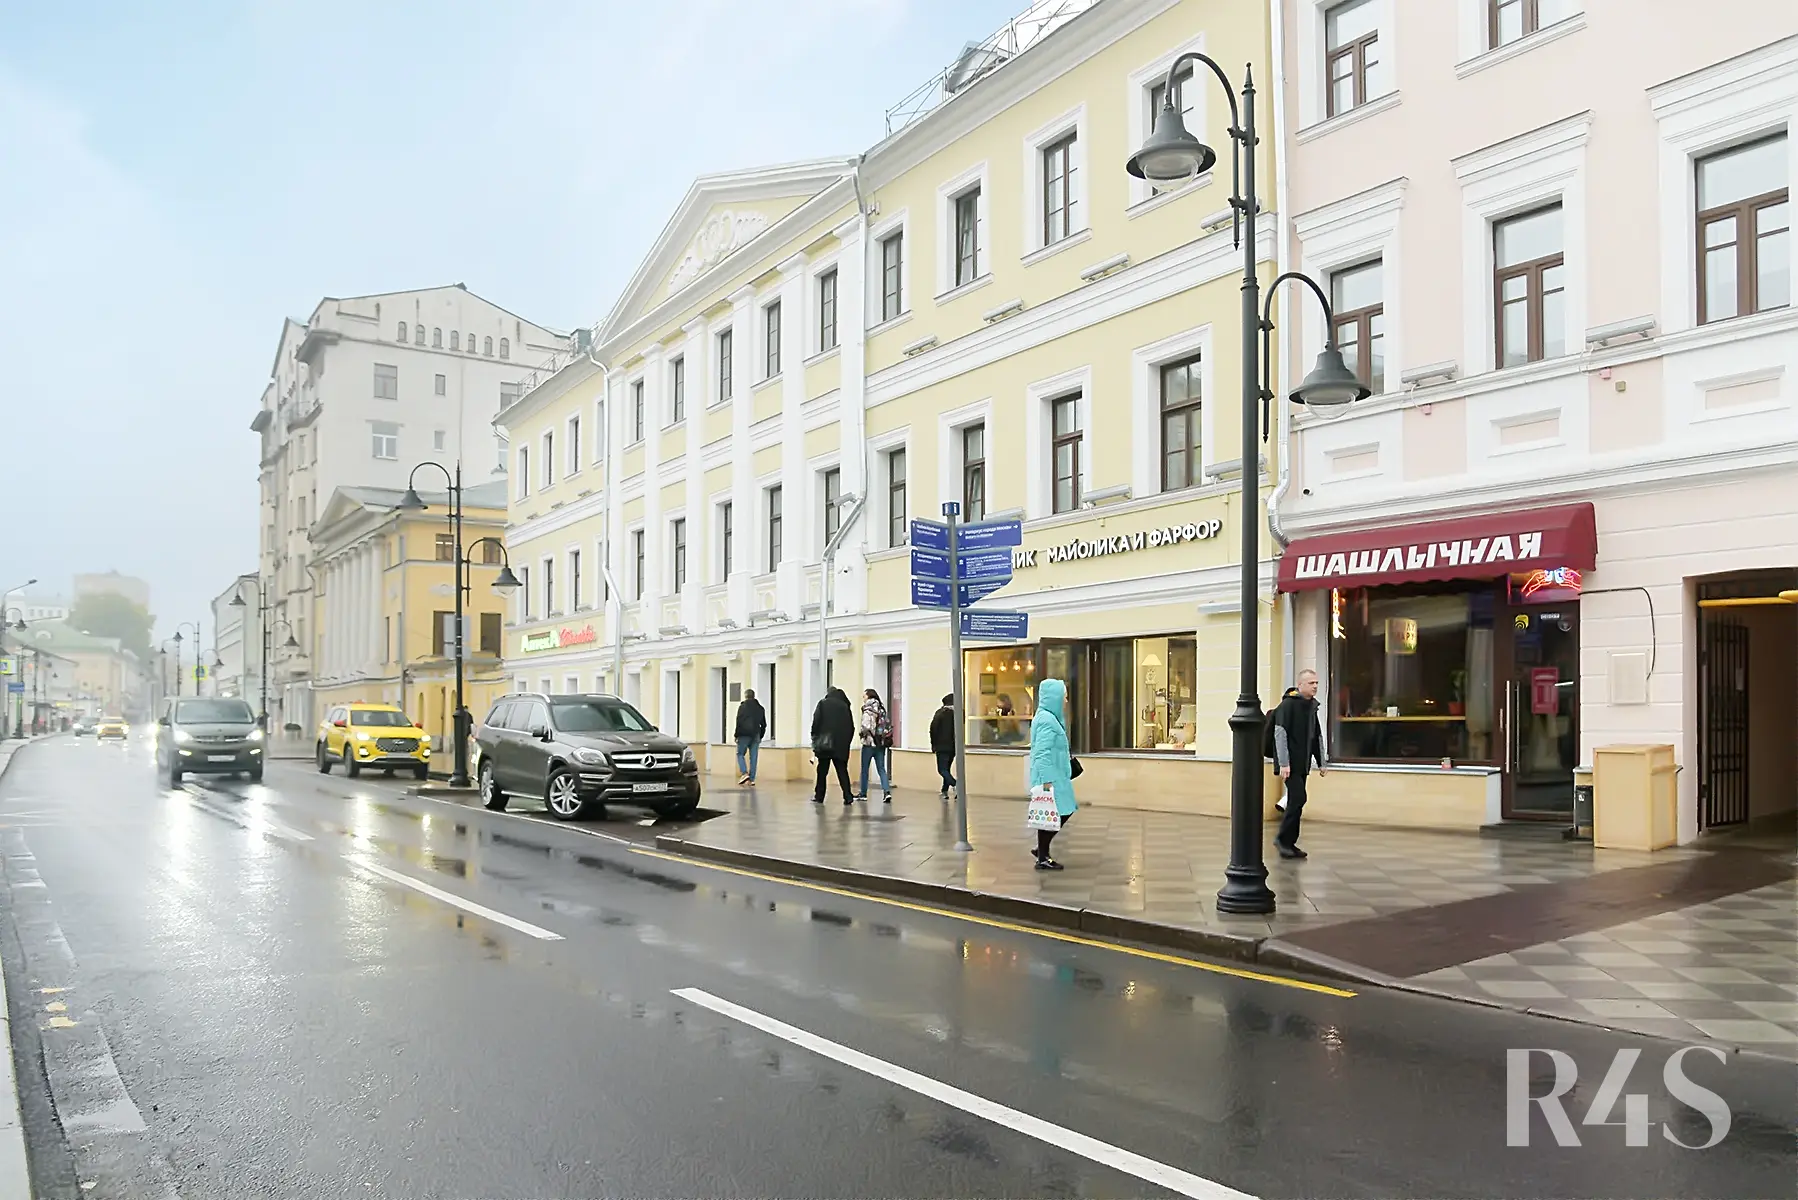 Продажа готового арендного бизнеса площадью 78.9 м2 в Москве: Пятницкая, 16с1 R4S | Realty4Sale